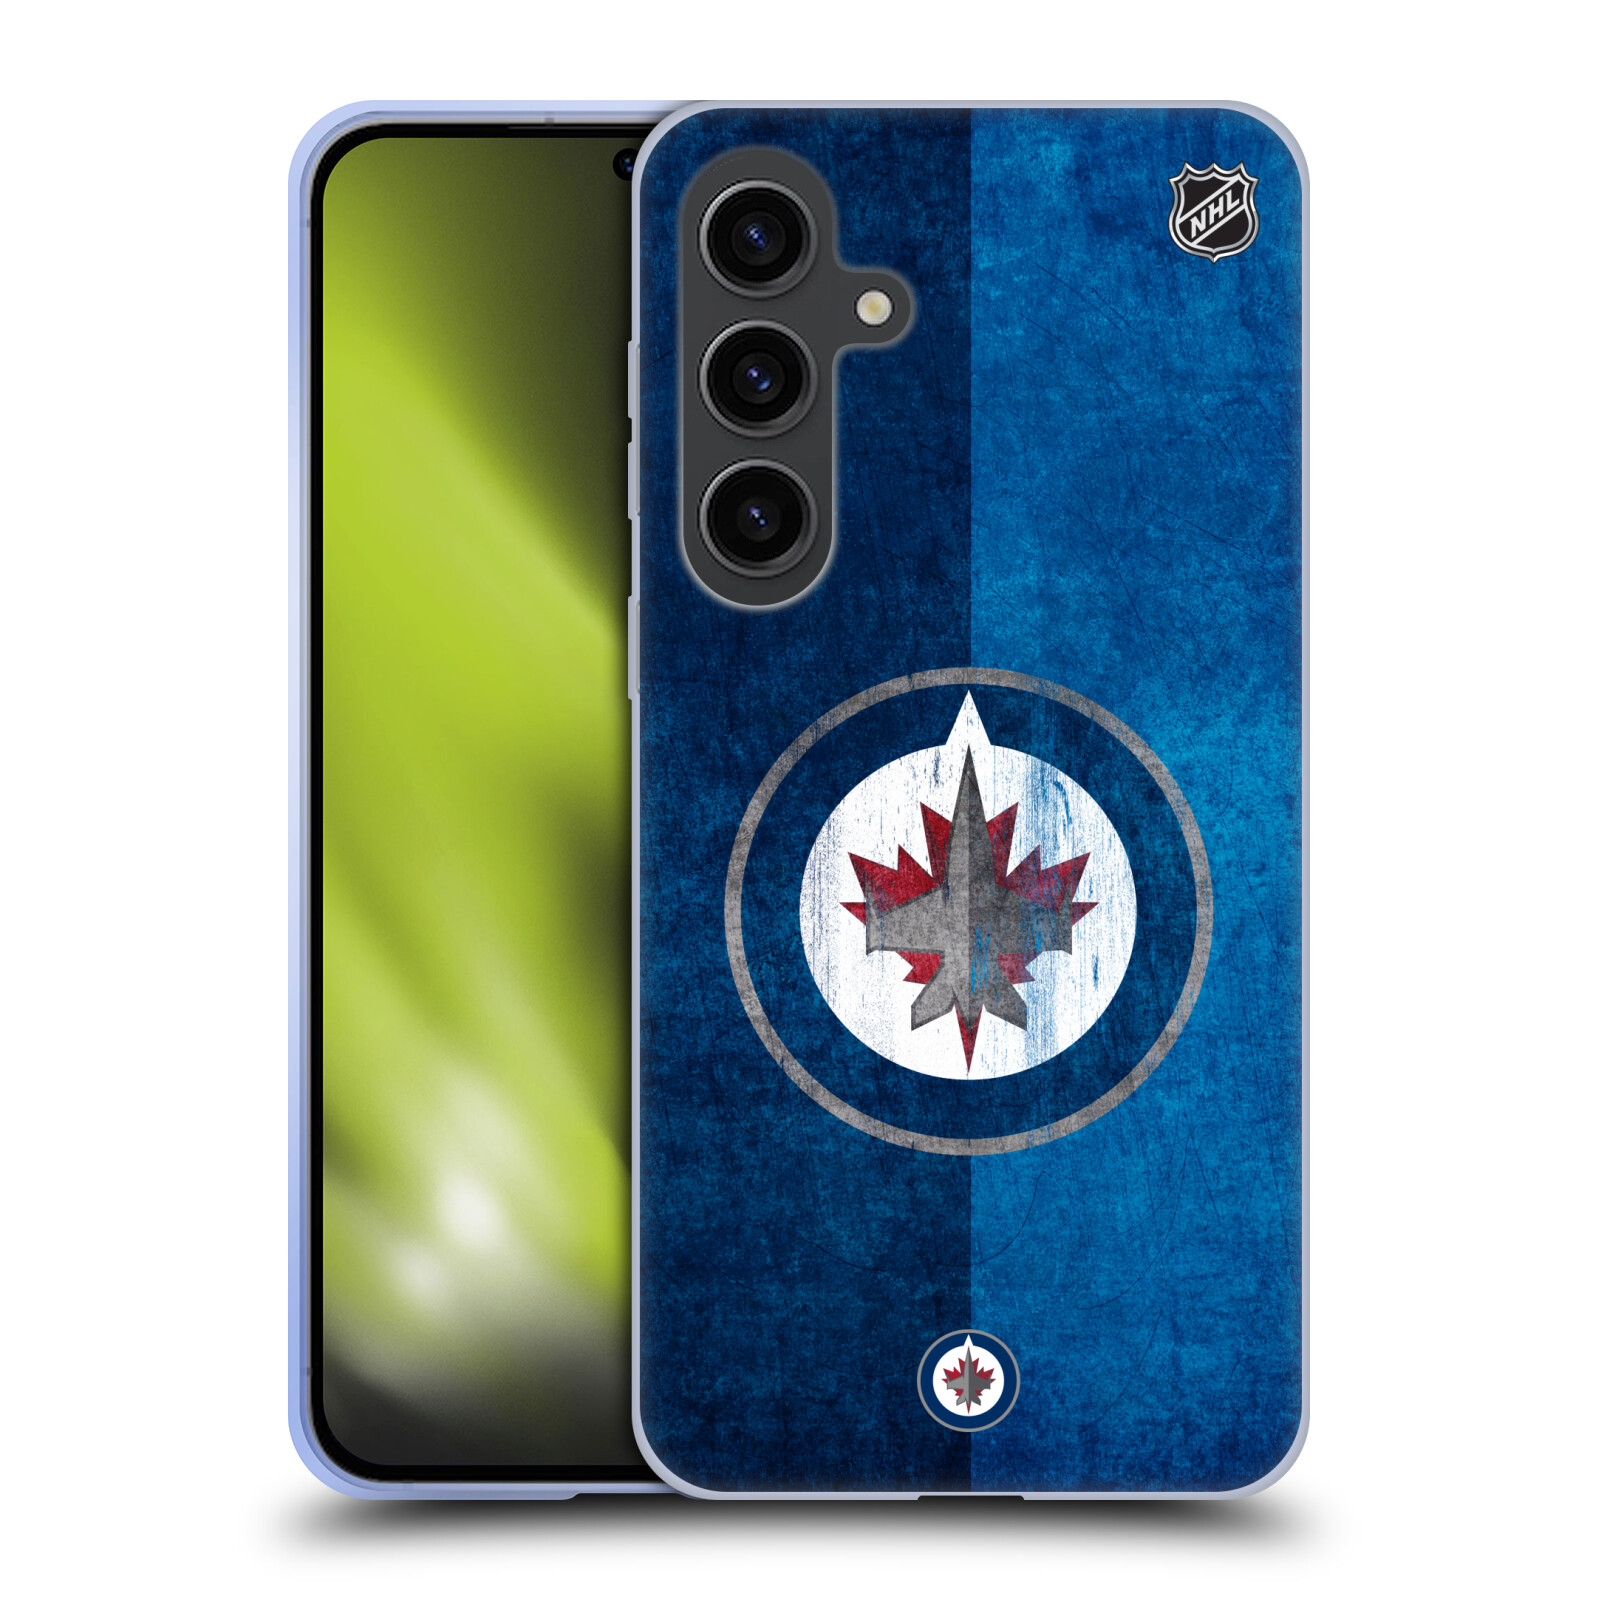 Silikonové lesklé pouzdro na mobil Samsung Galaxy S24 Plus - NHL - Půlené logo Winnipeg Jets (Silikonový kryt, obal, pouzdro na mobilní telefon Samsung Galaxy S24 Plus s licencovaným motivem NHL - Půlené logo Winnipeg Jets)